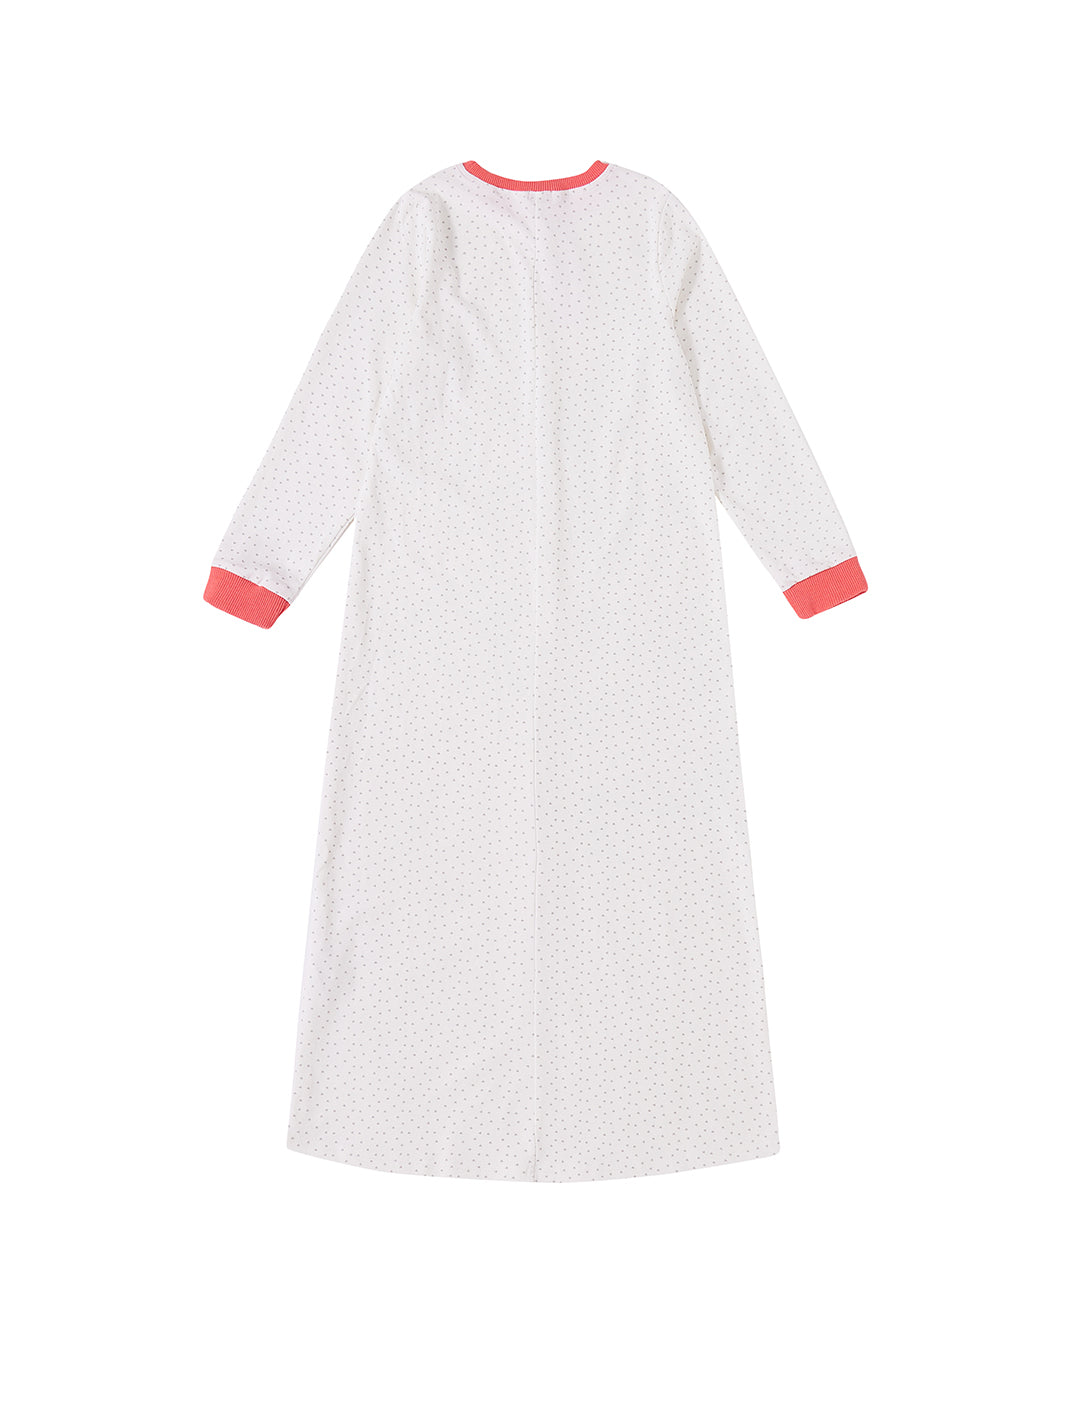 All Over Mini Heart Nightgown - Winter white